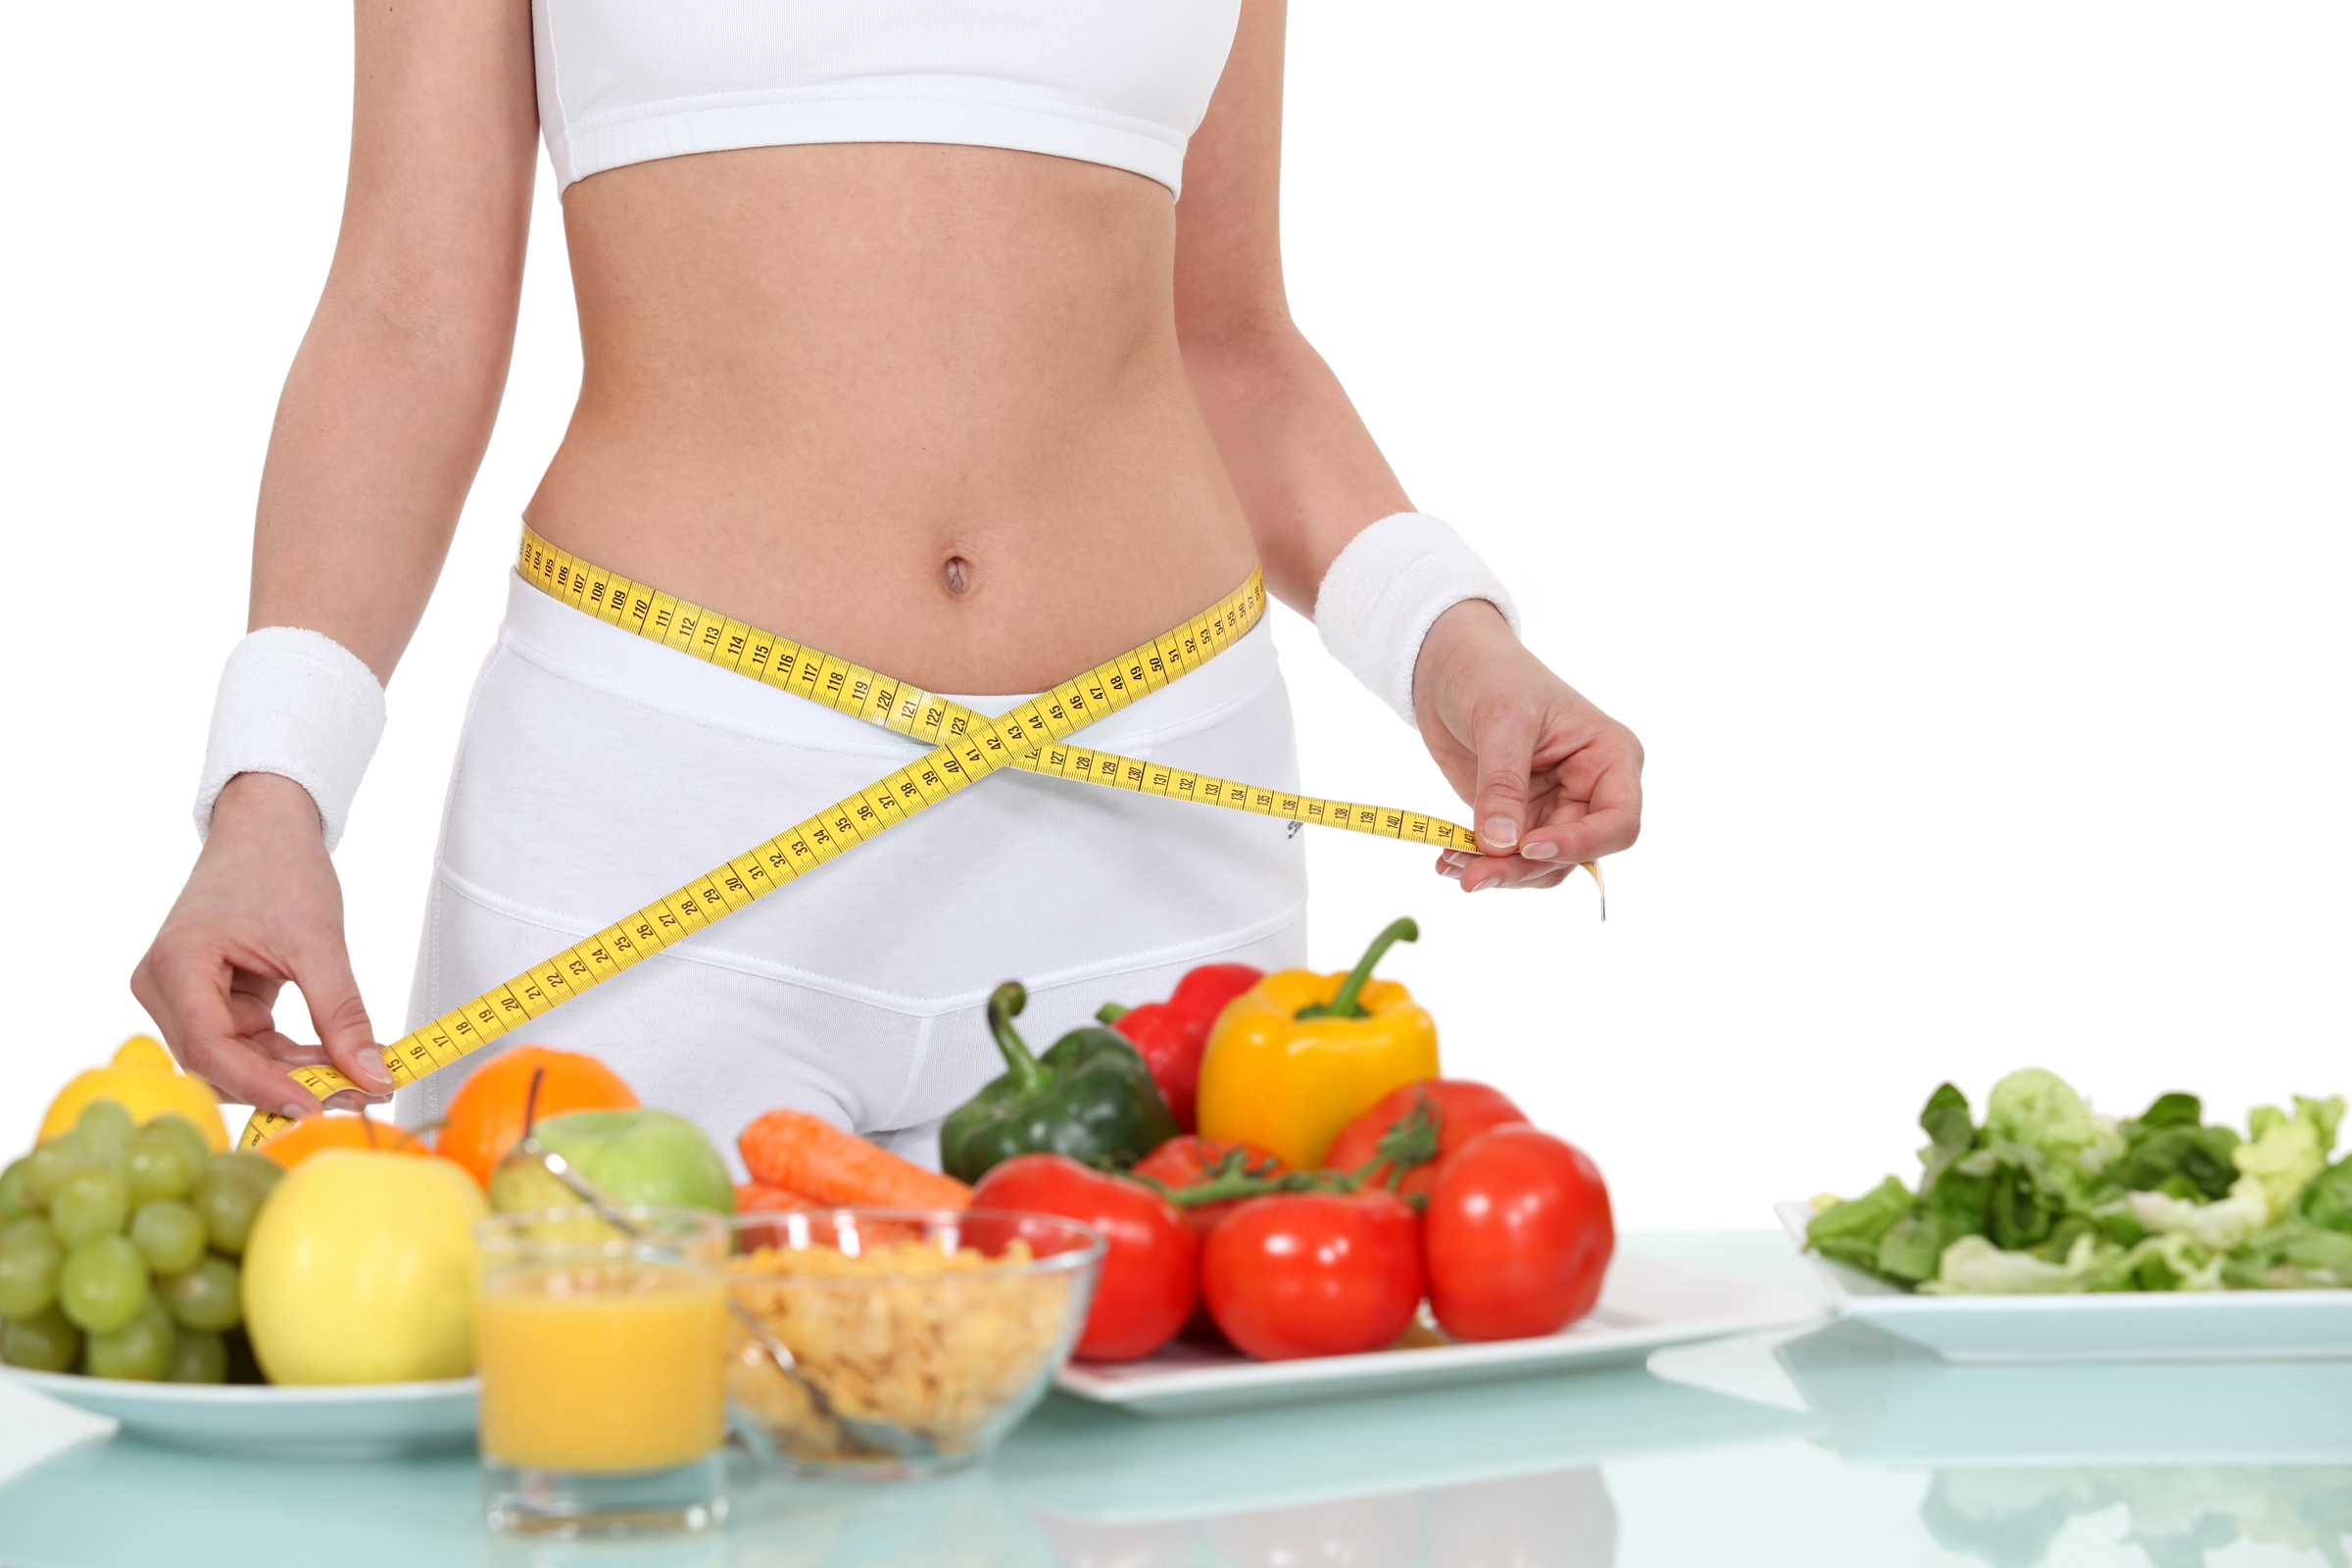 Dieta engordar sano